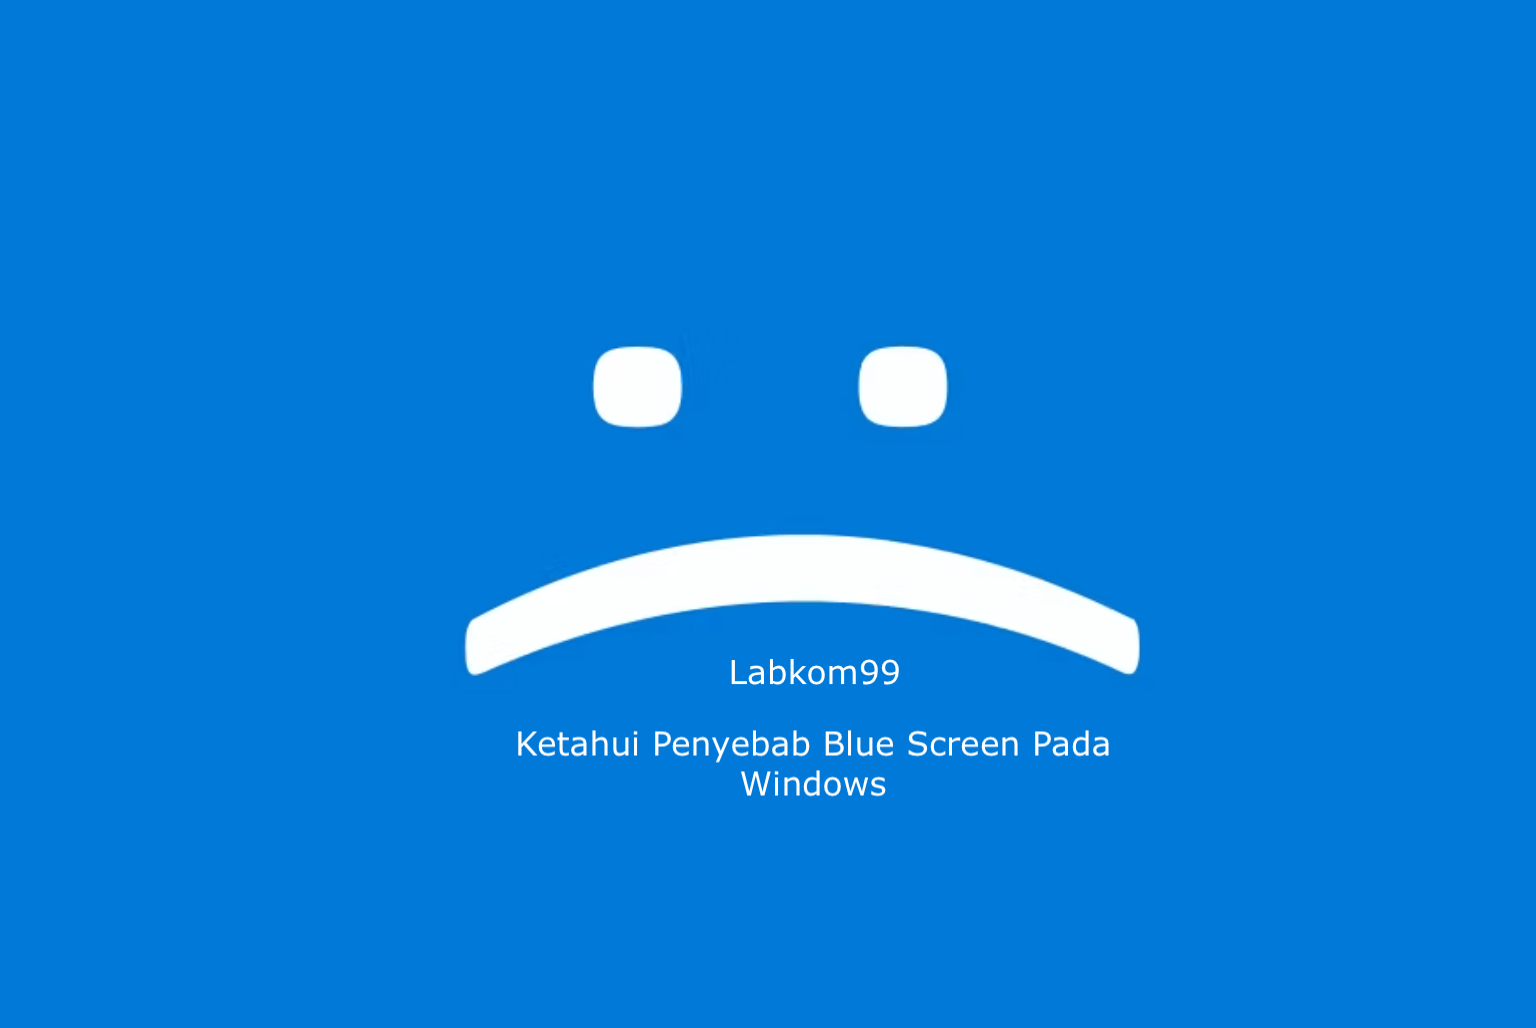 Ketahui Penyebab Blue Screen Pada Windows